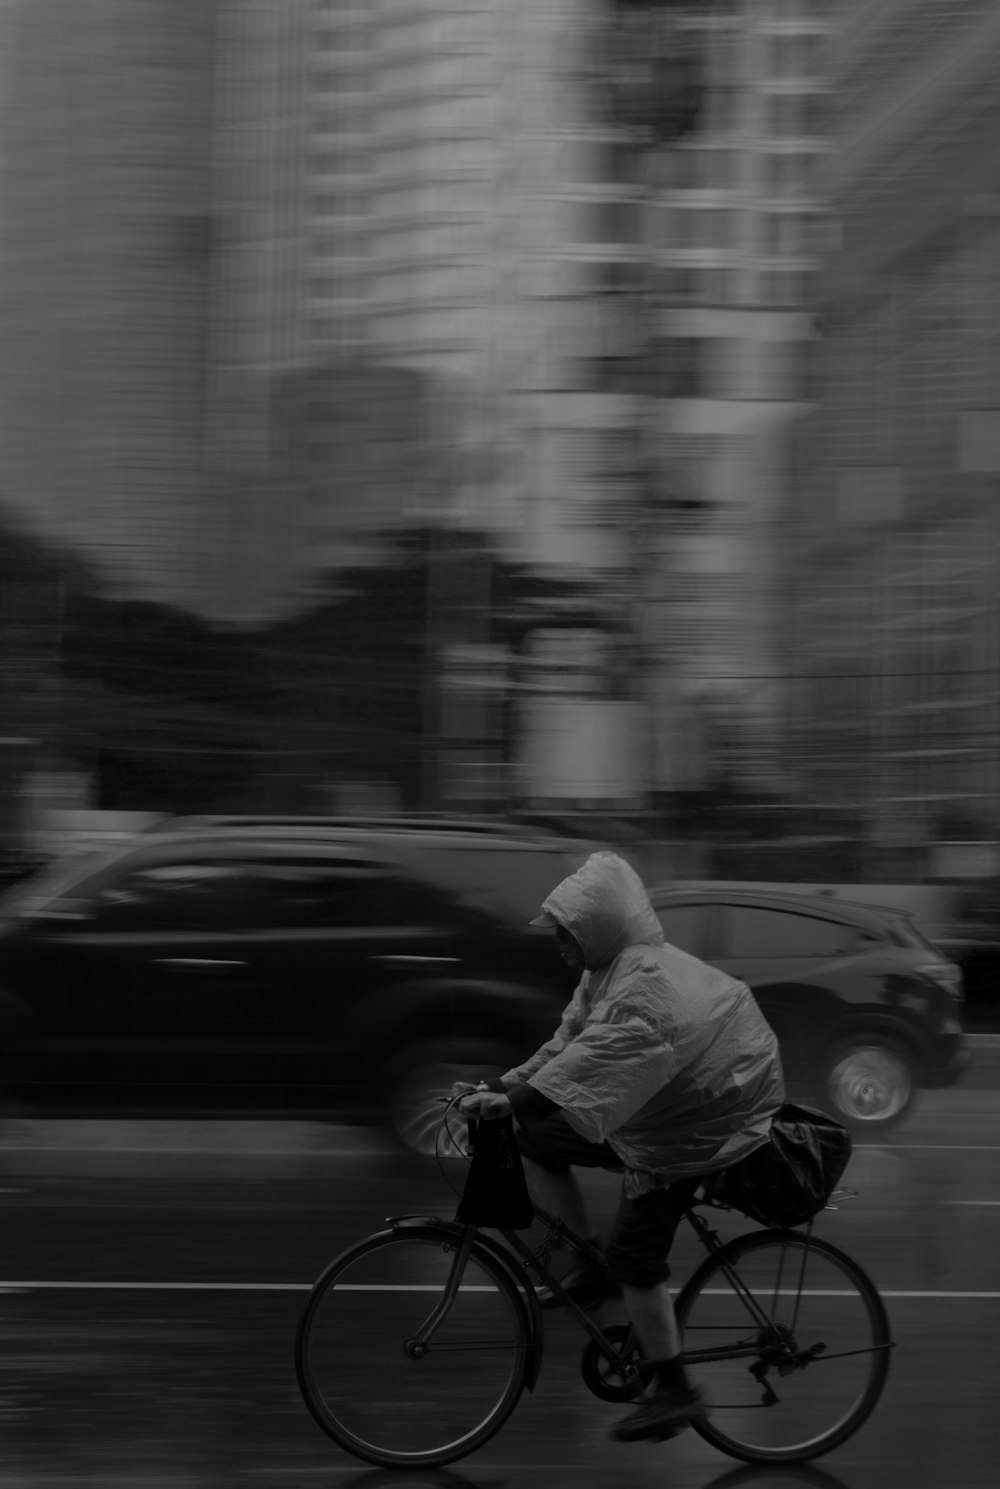 fotografia in scala di grigi di una persona in sella alla bicicletta